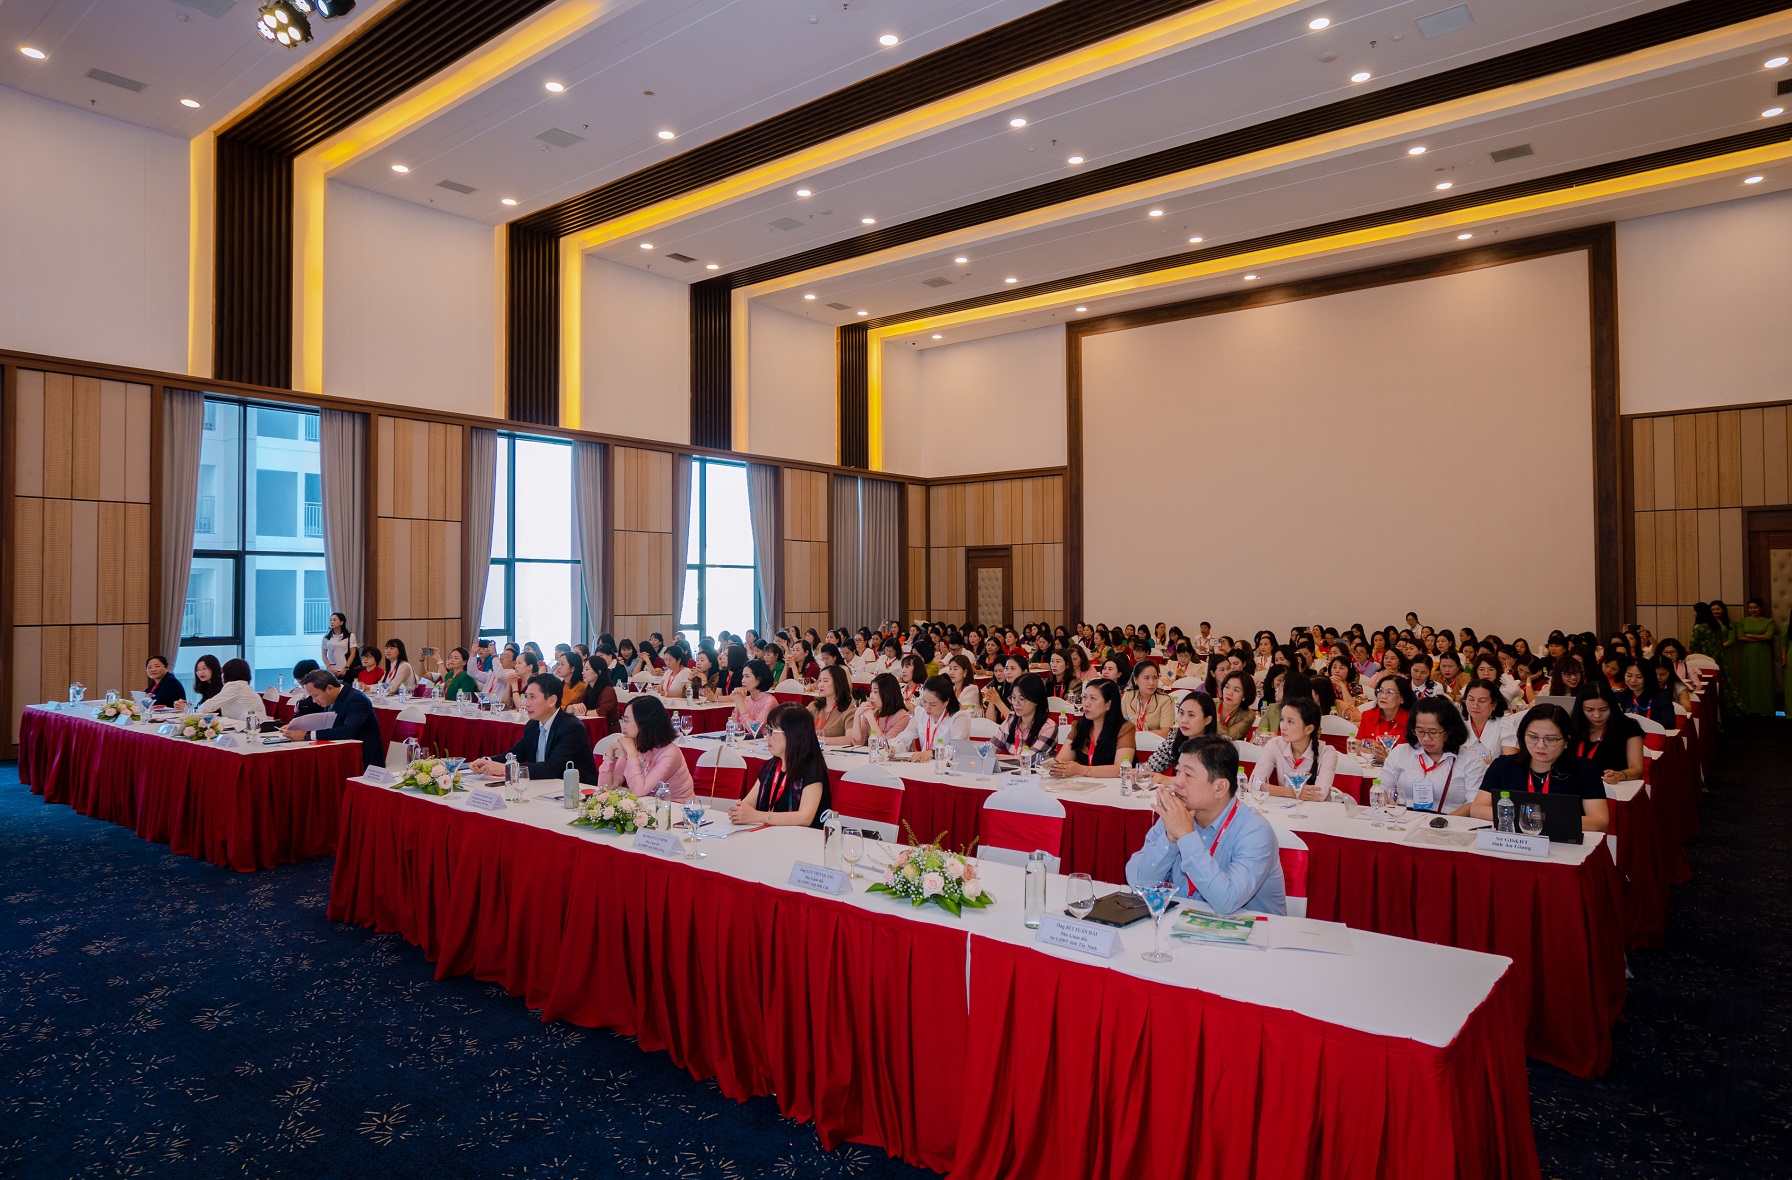 Honda Việt Nam tổ chức Hội nghị tổng kết chương trình “Tôi yêu Việt Nam” trong cấp học mầm non giai đoạn 2020-2024 13-toan-canh-hoi-nghi-tong-ket-chuong-trinh-toi-yeu-viet-nam-cap-hoc-mam-non-giai-doan-2020-2024.JPG